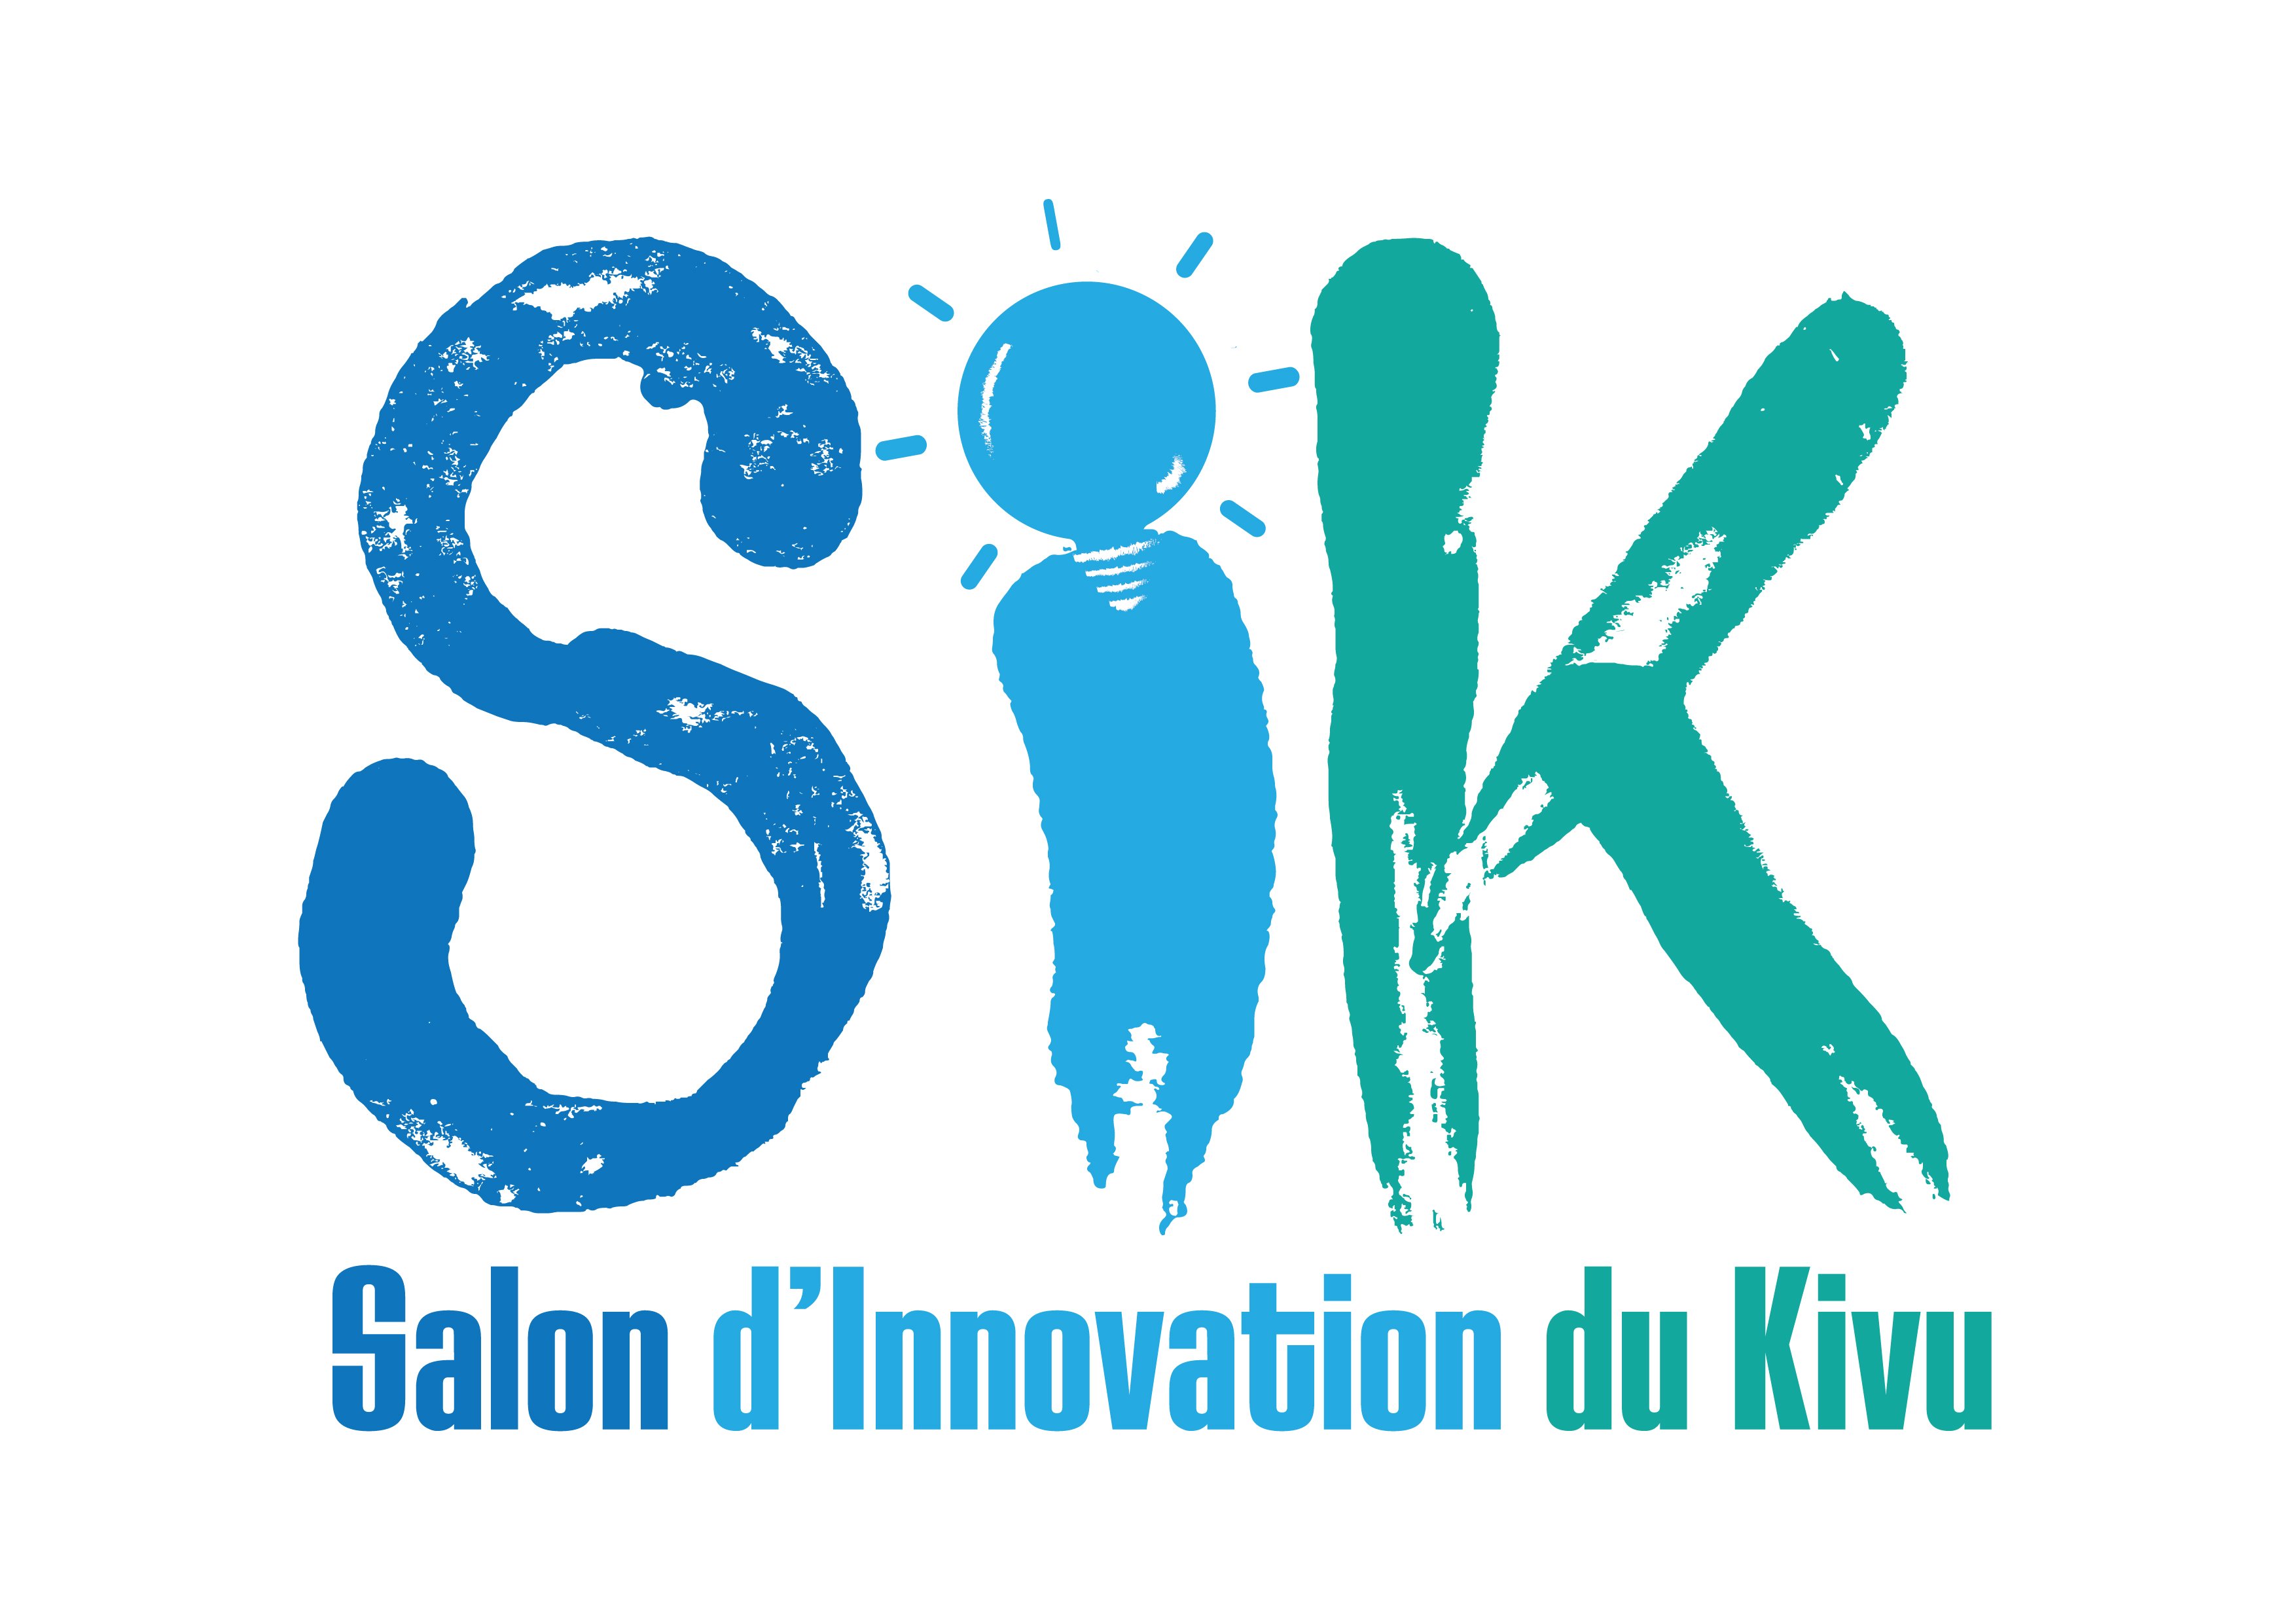 Salon d'innovation du Kivu